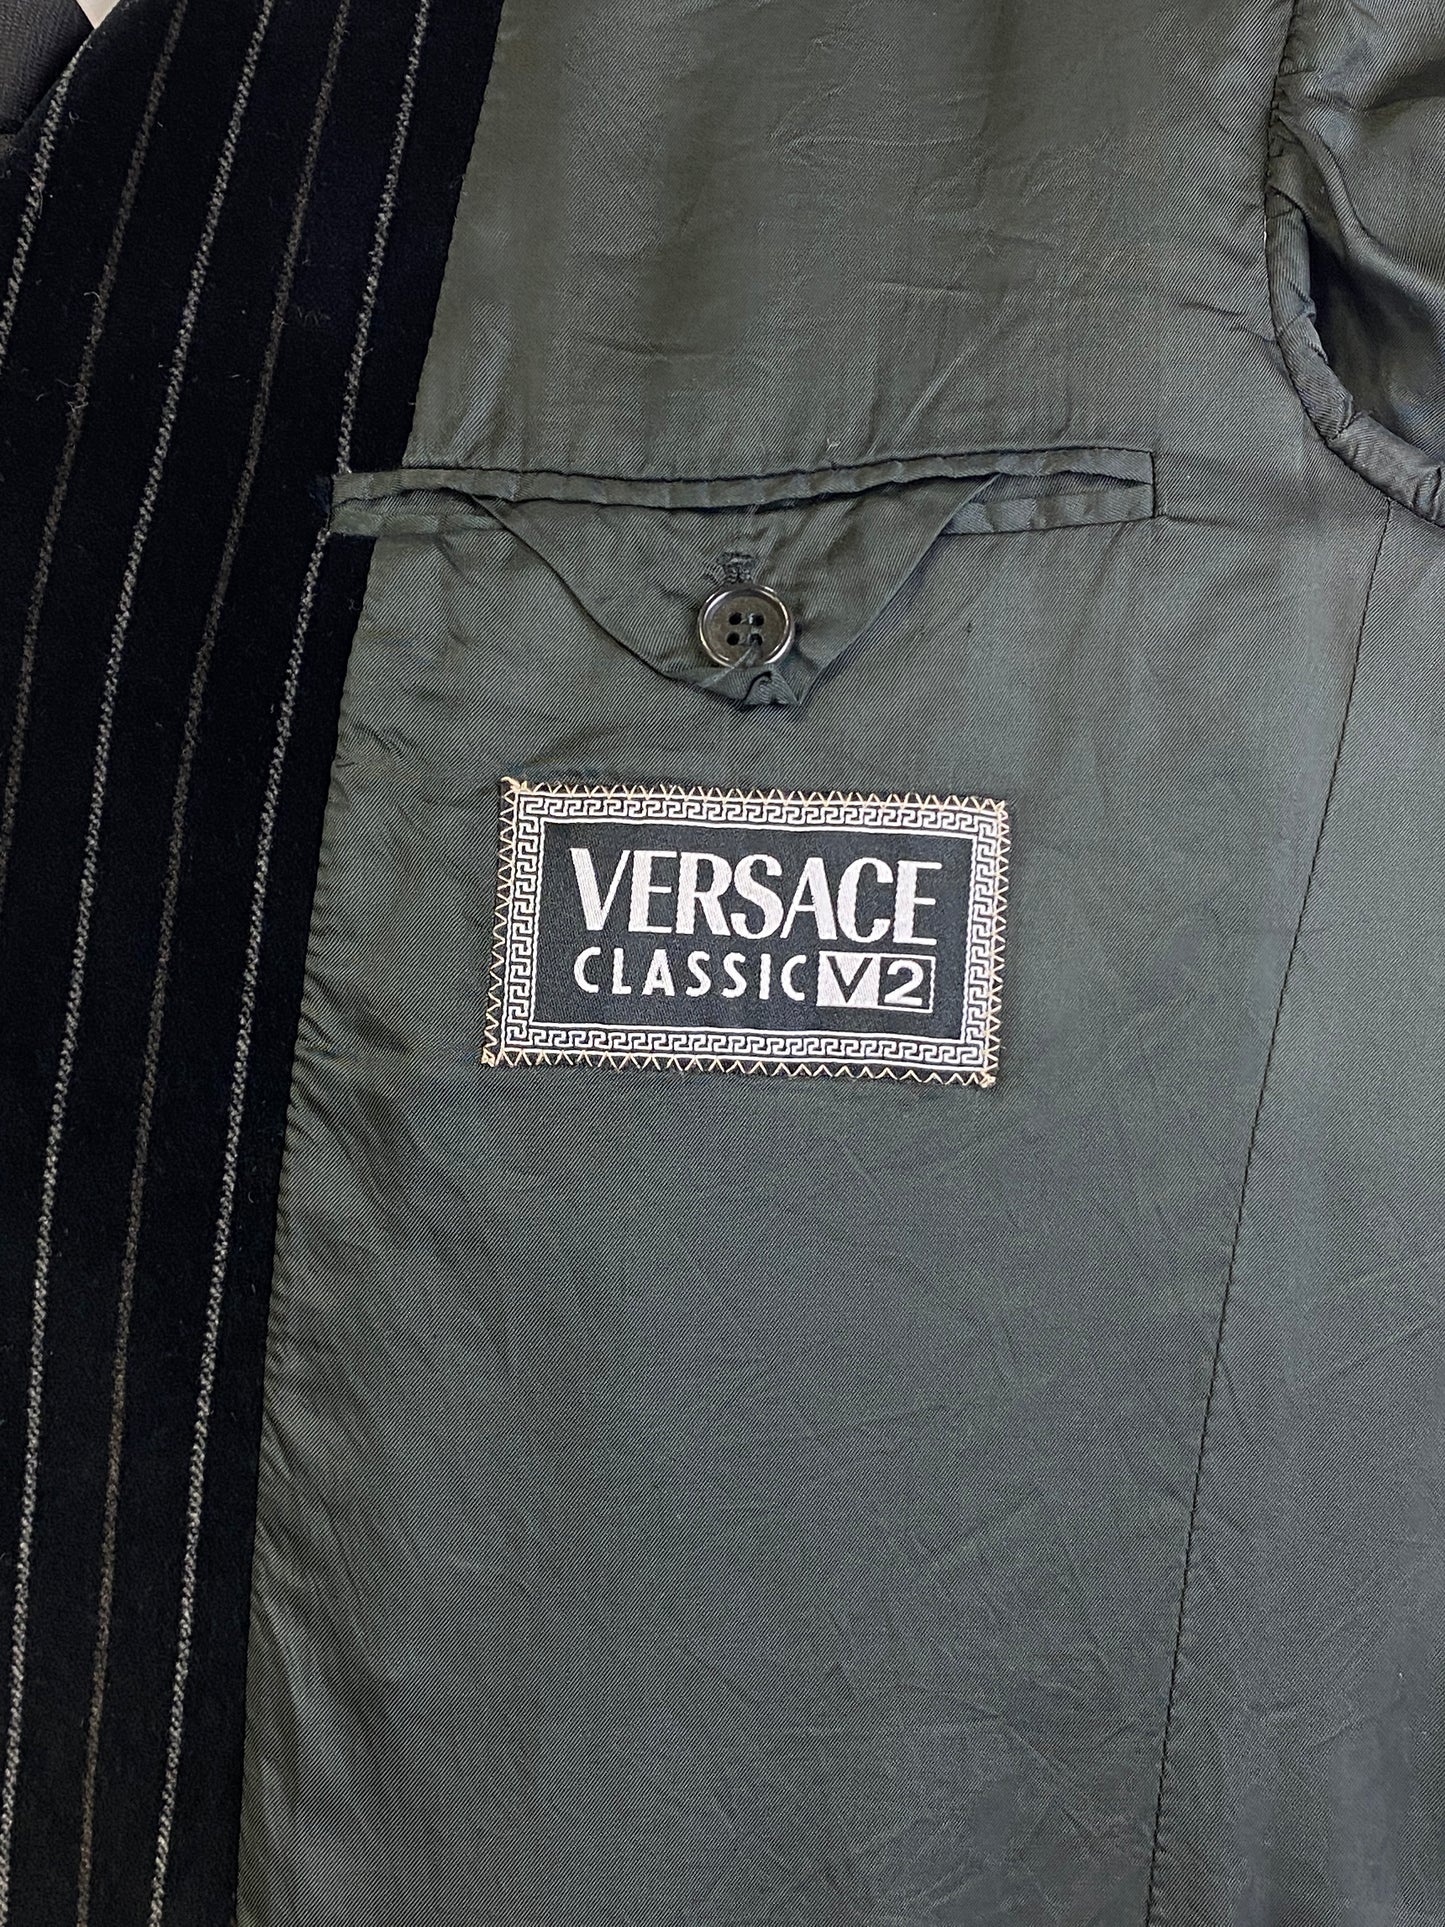 Mid 1990s Vintage Versace 2-Piece Suit, Black/ Brown Velvet Pinstripe Suit, Versace Classic V2, C38